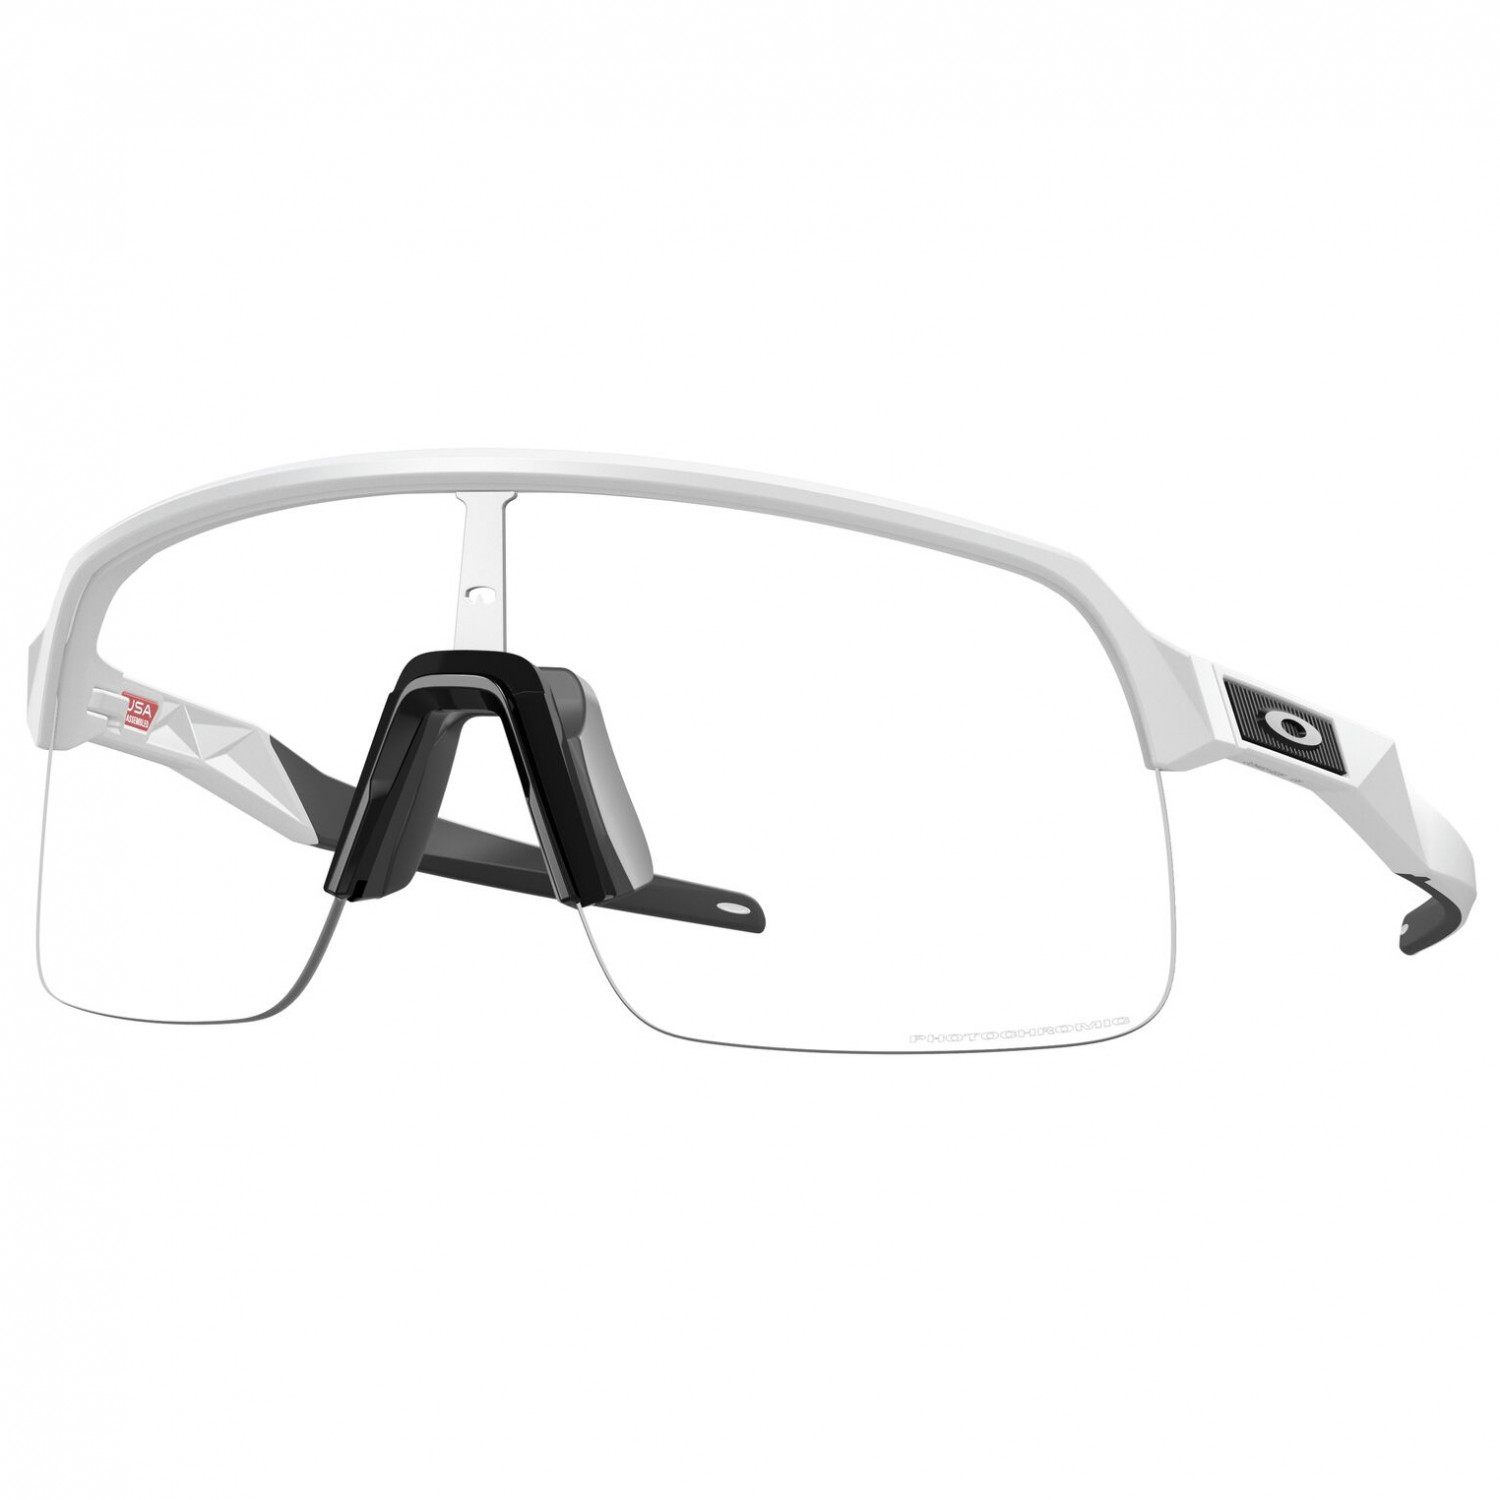 Велосипедные очки Oakley Sutro Lite Photochromic S1 S2 (VLT 69% 23%), матовый белый